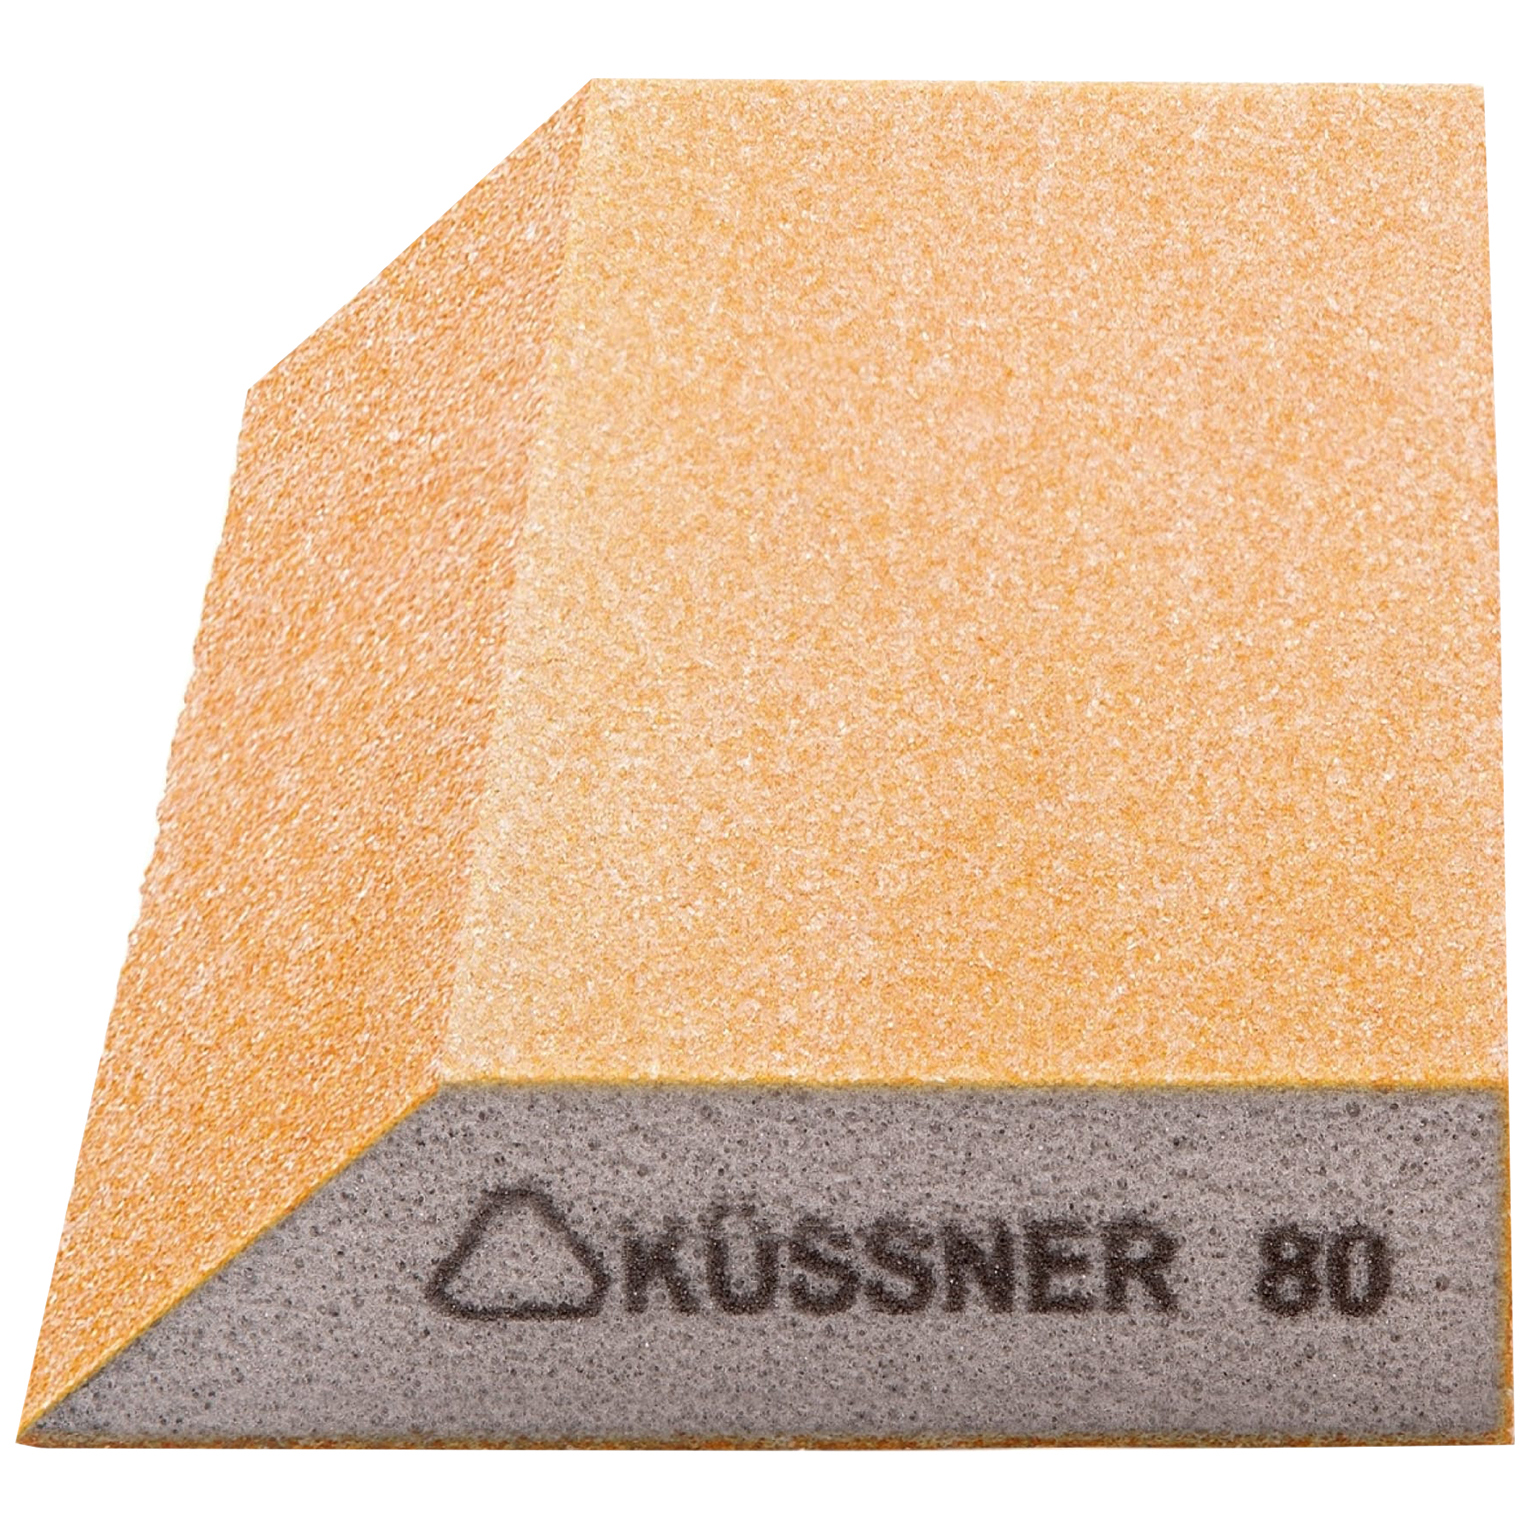 фото Kussner брусок шлифовальный р80, трапеция soft, 125x90x25 мм 1000-250080